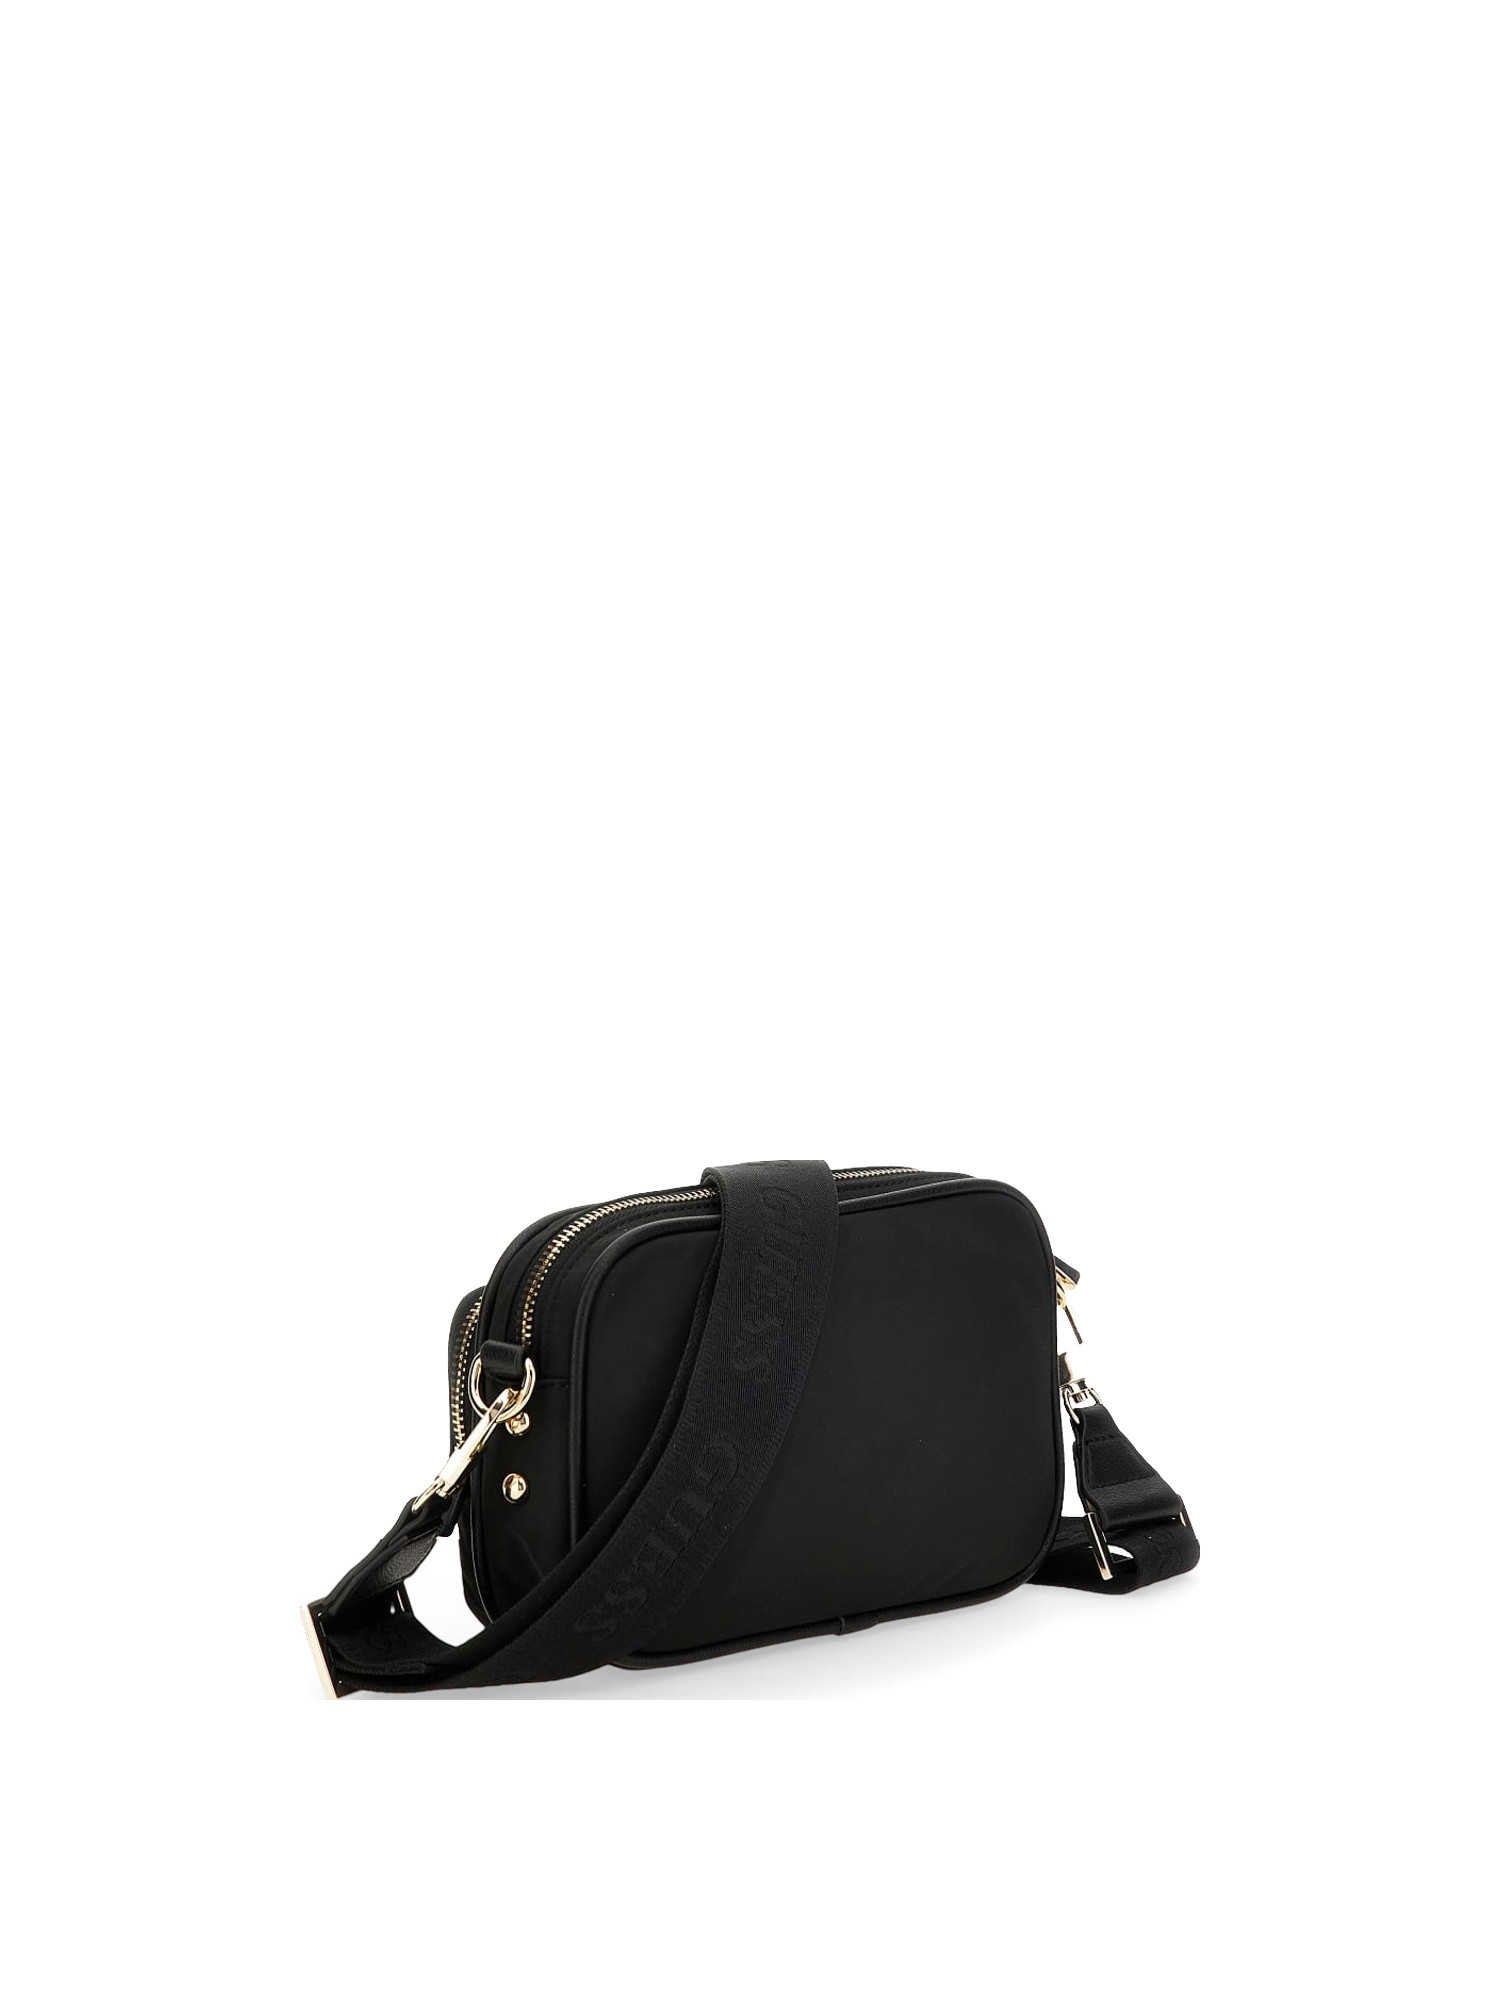 Guess - Gemma eco mini shoulder bag, Black, large image number 1